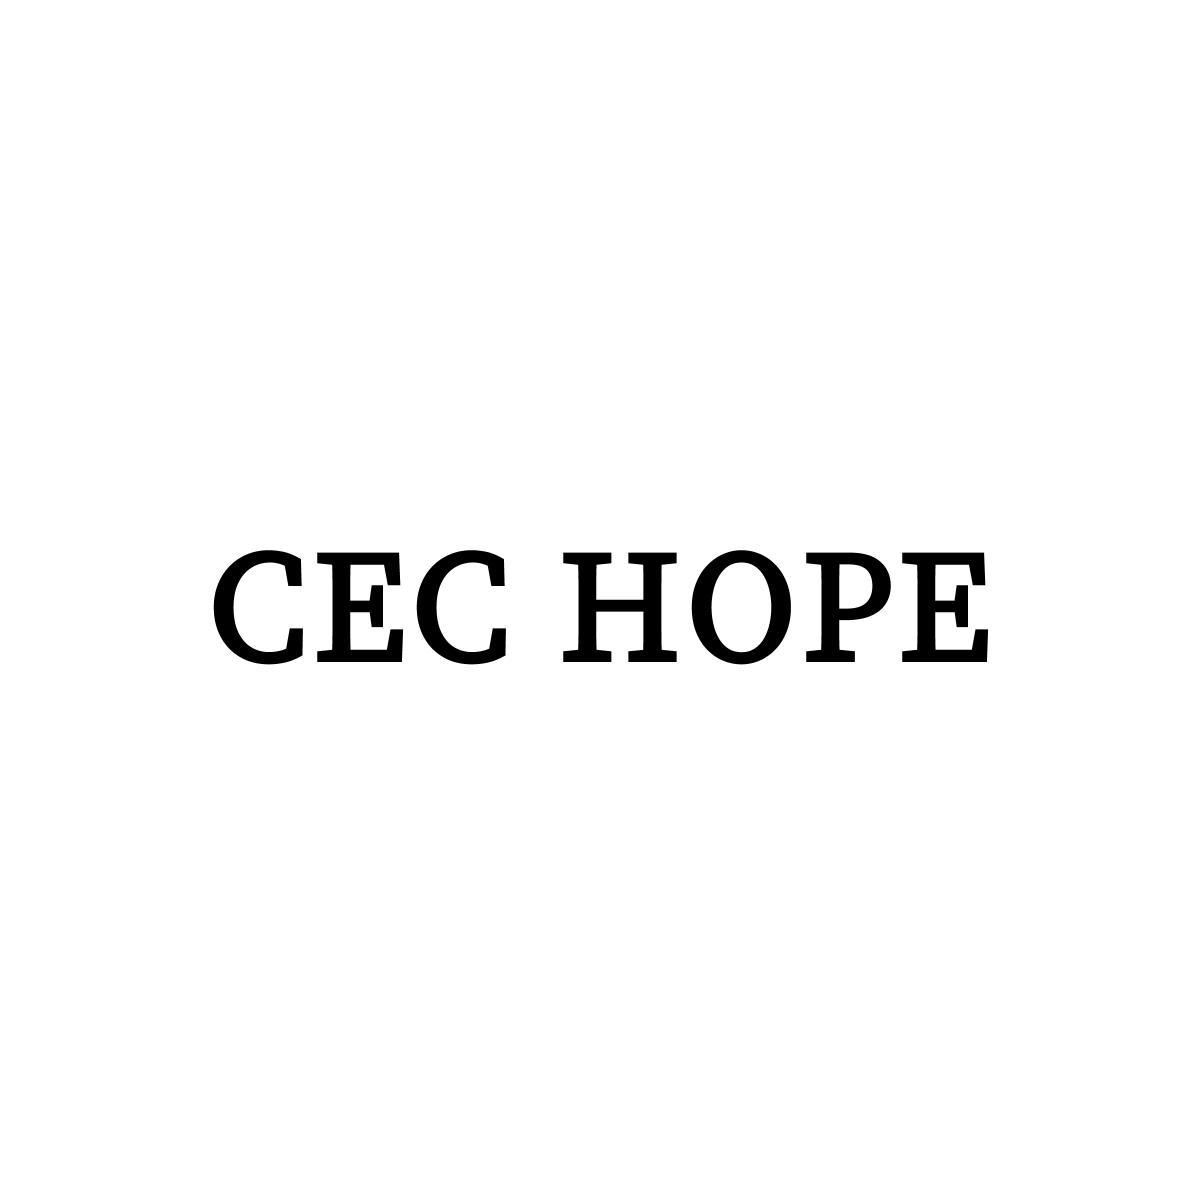 CEC HOPE